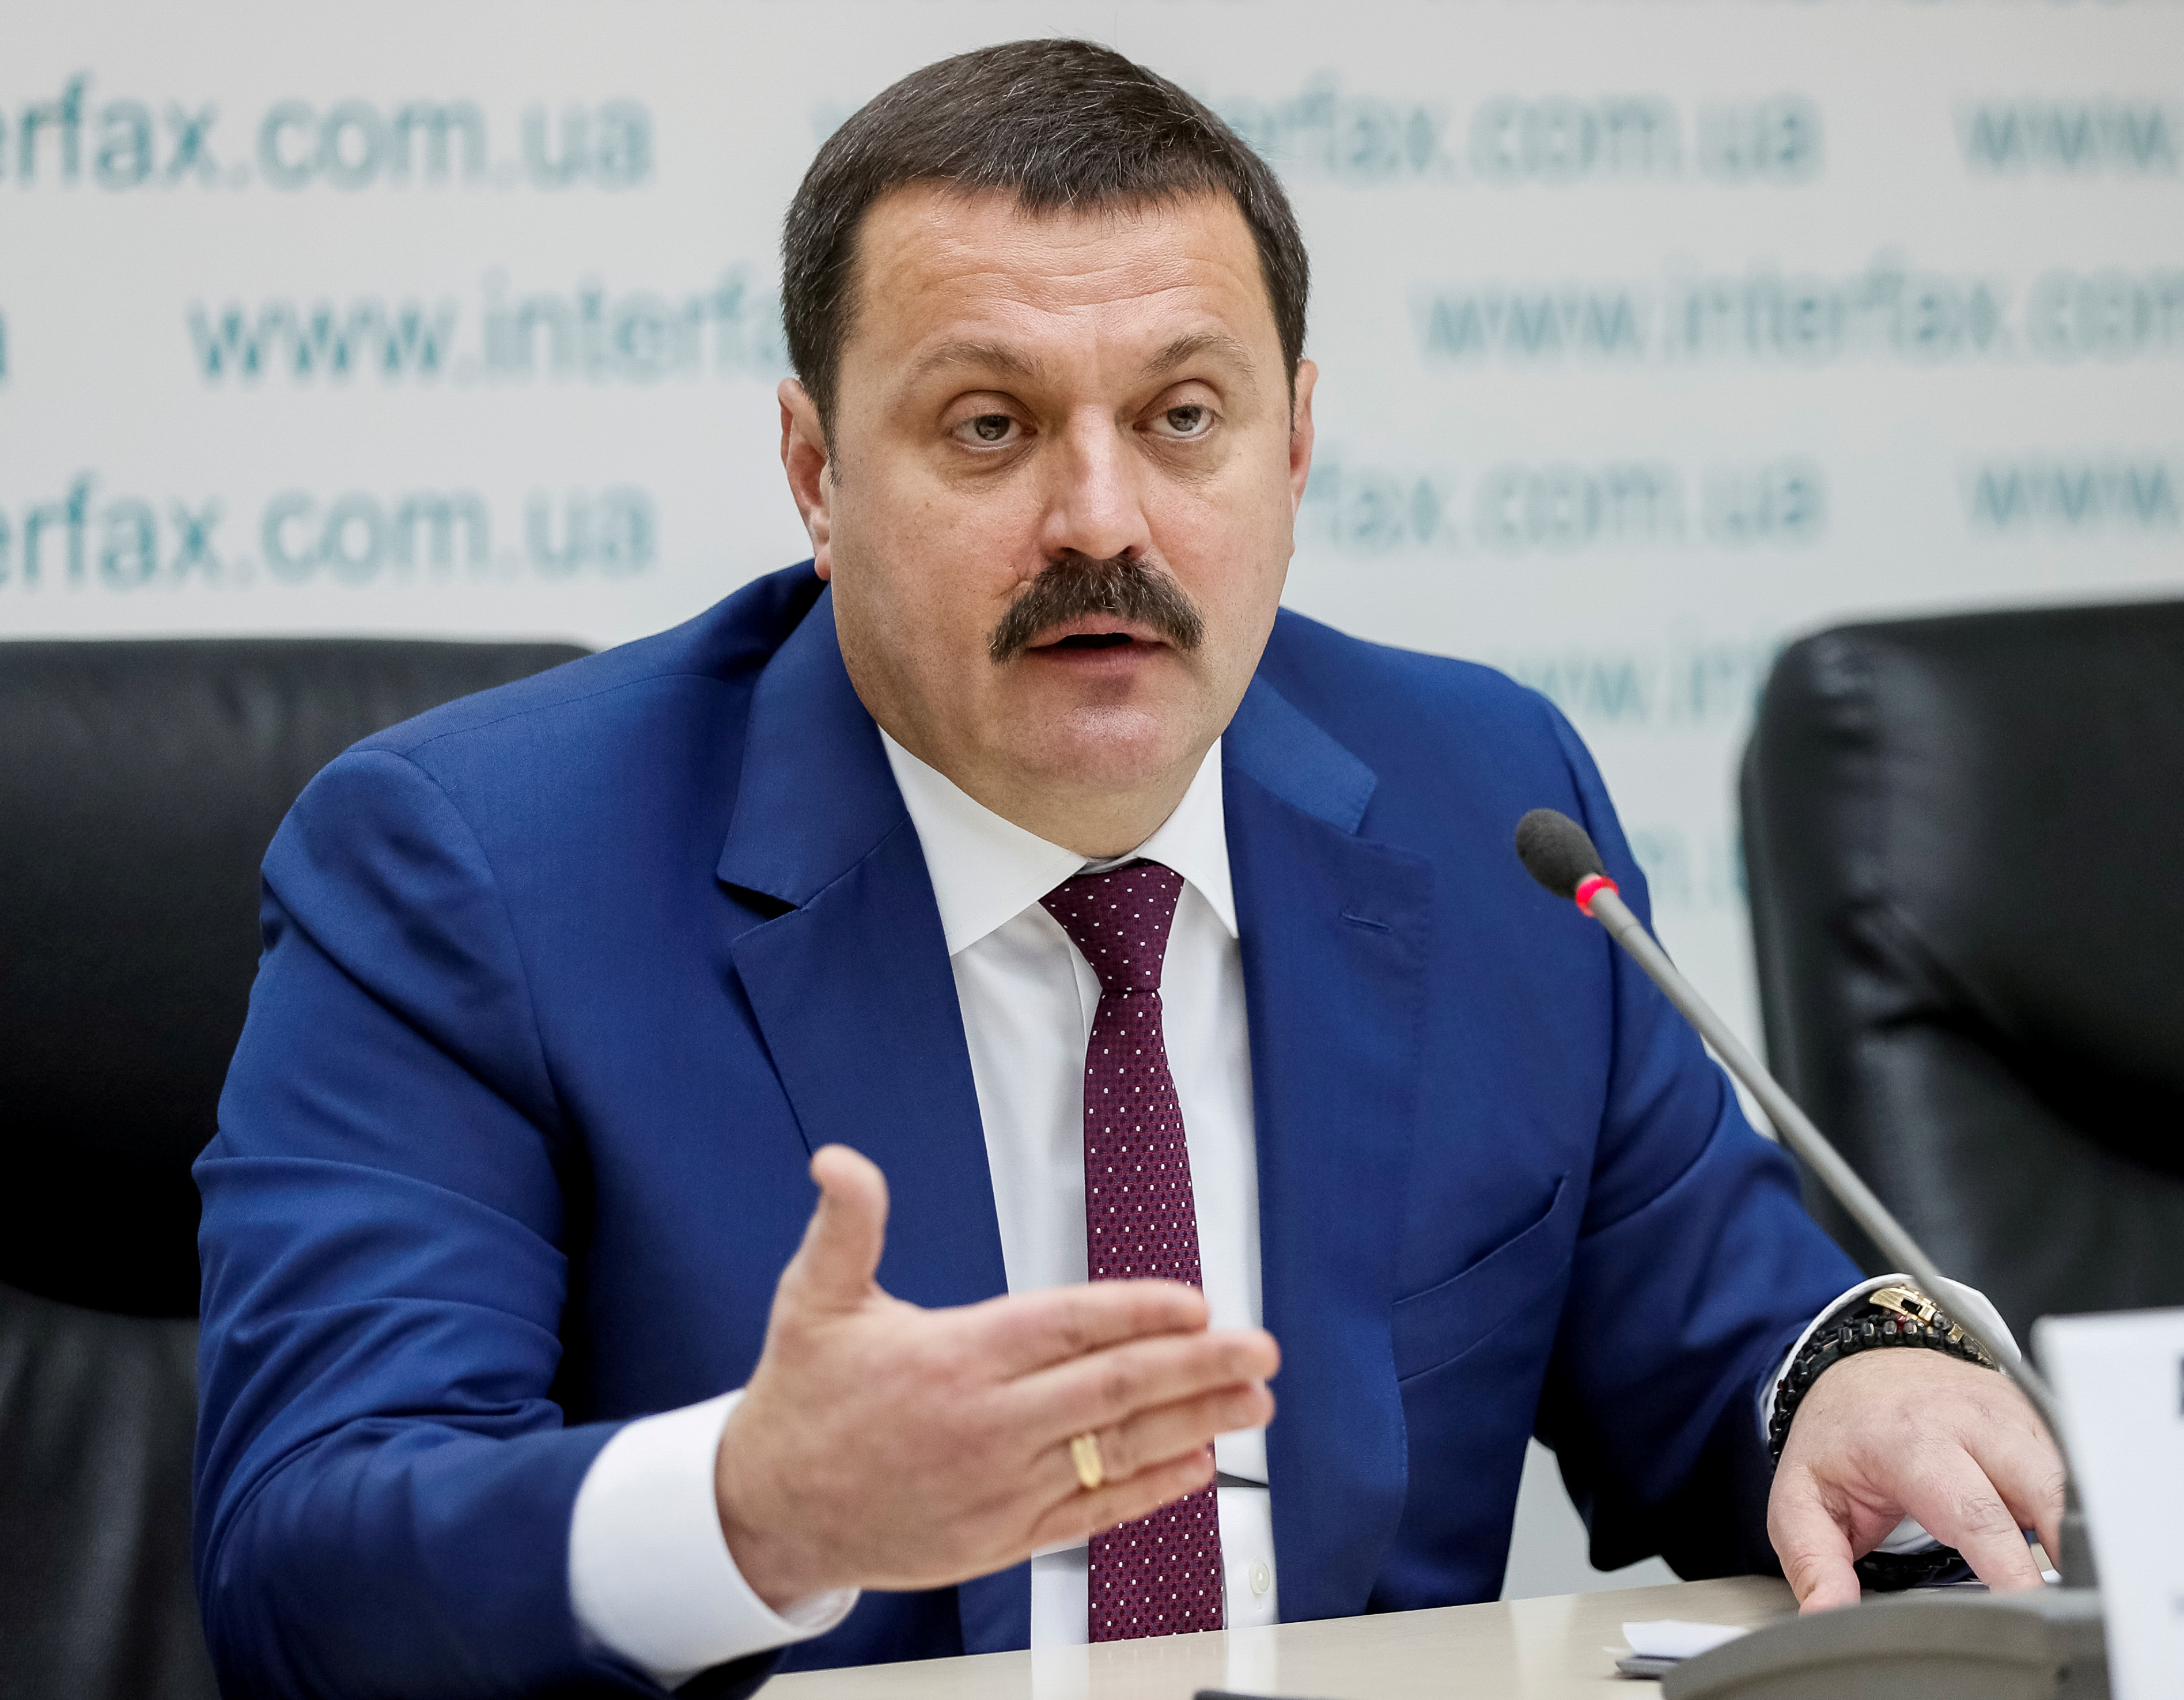 Ukrainian lawmaker Derkach attends a news conference titled 